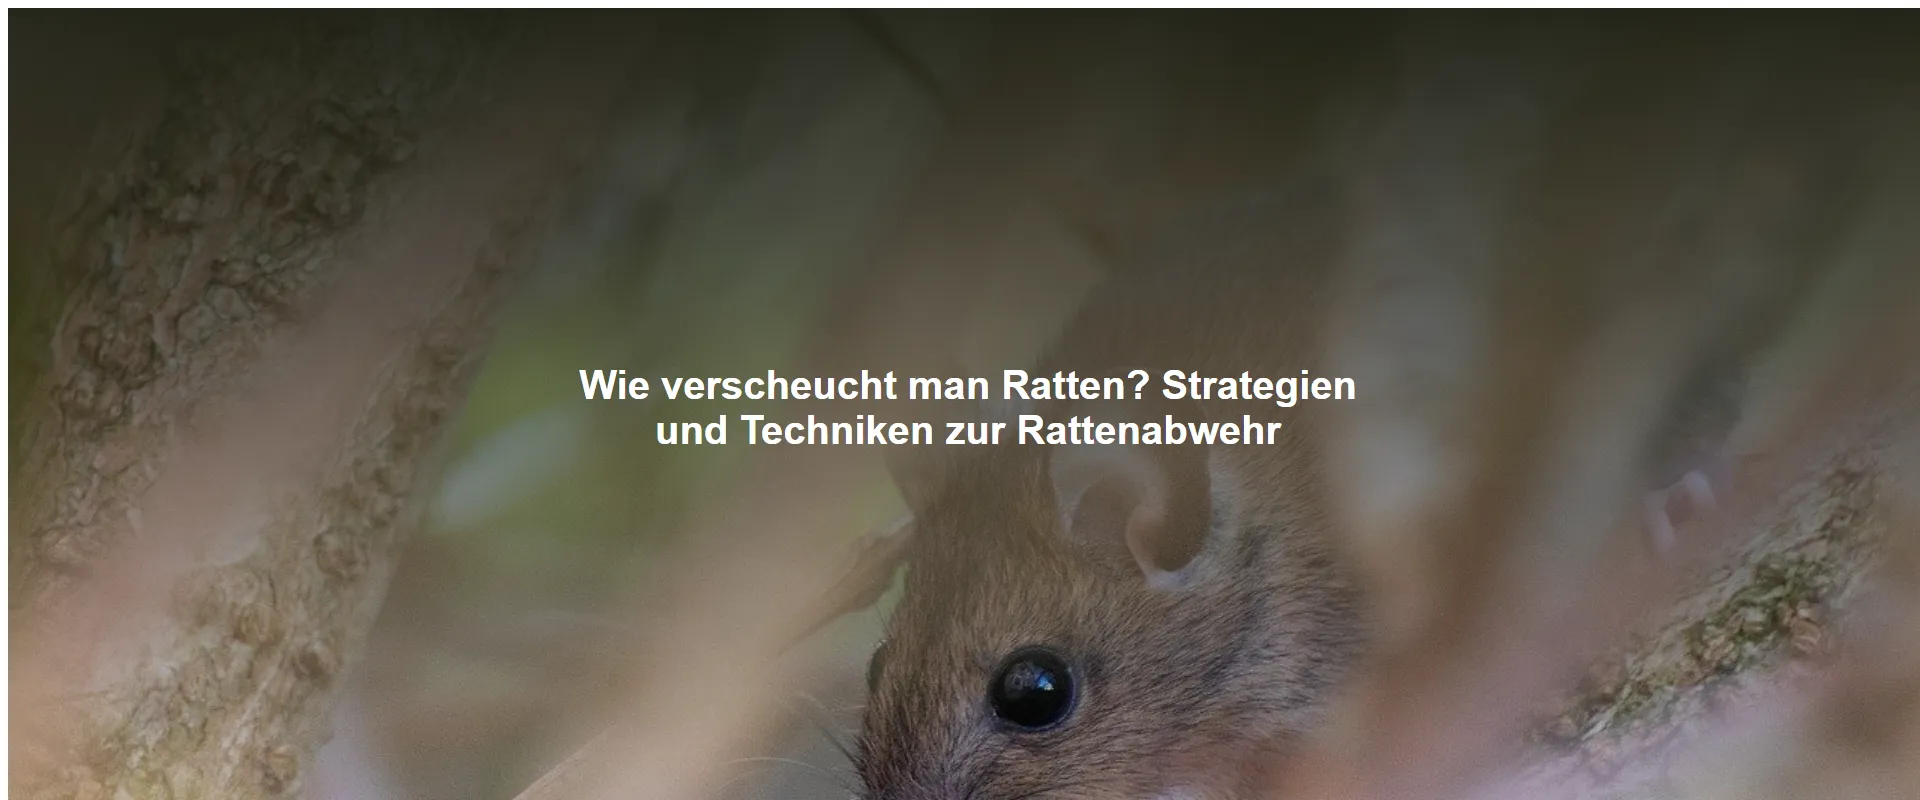 Wie verscheucht man Ratten? Strategien und Techniken zur Rattenabwehr